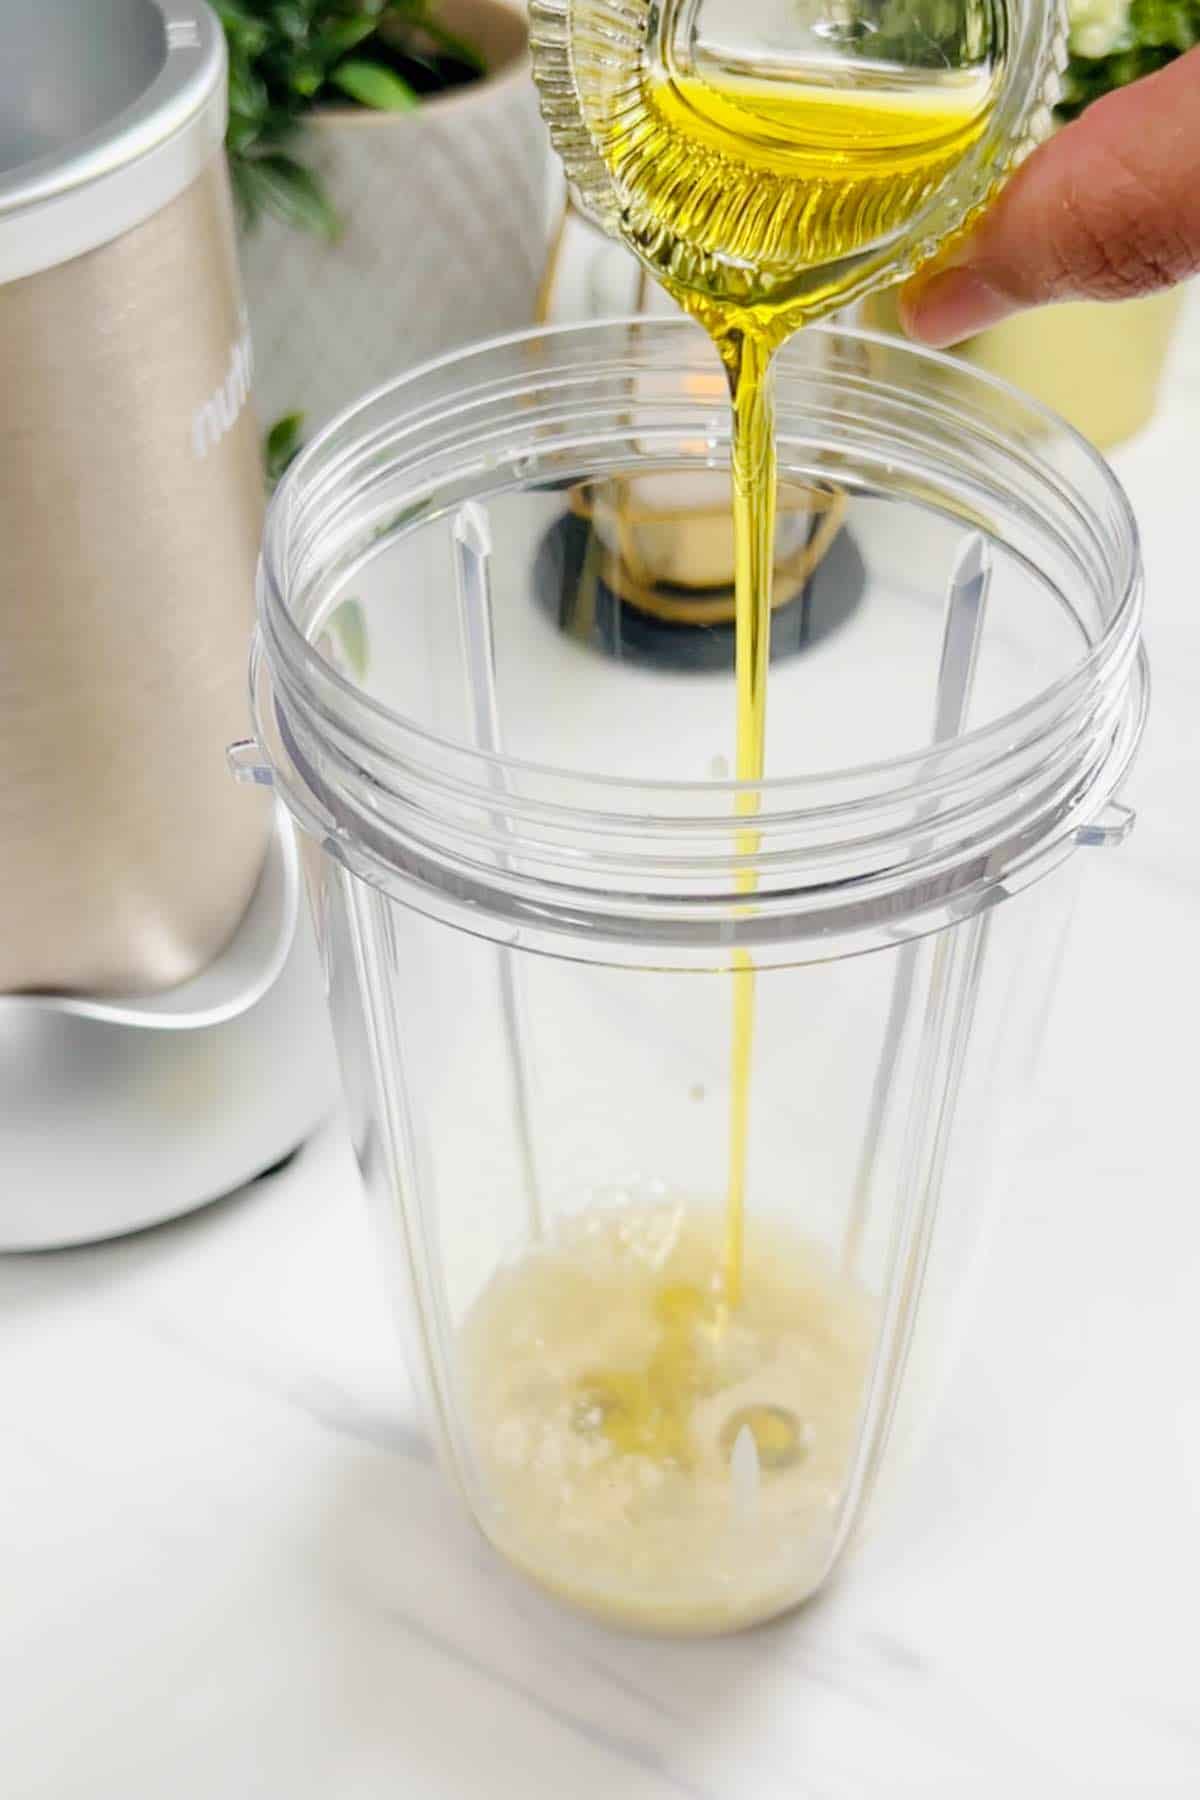 adding olive oil to a blender jar